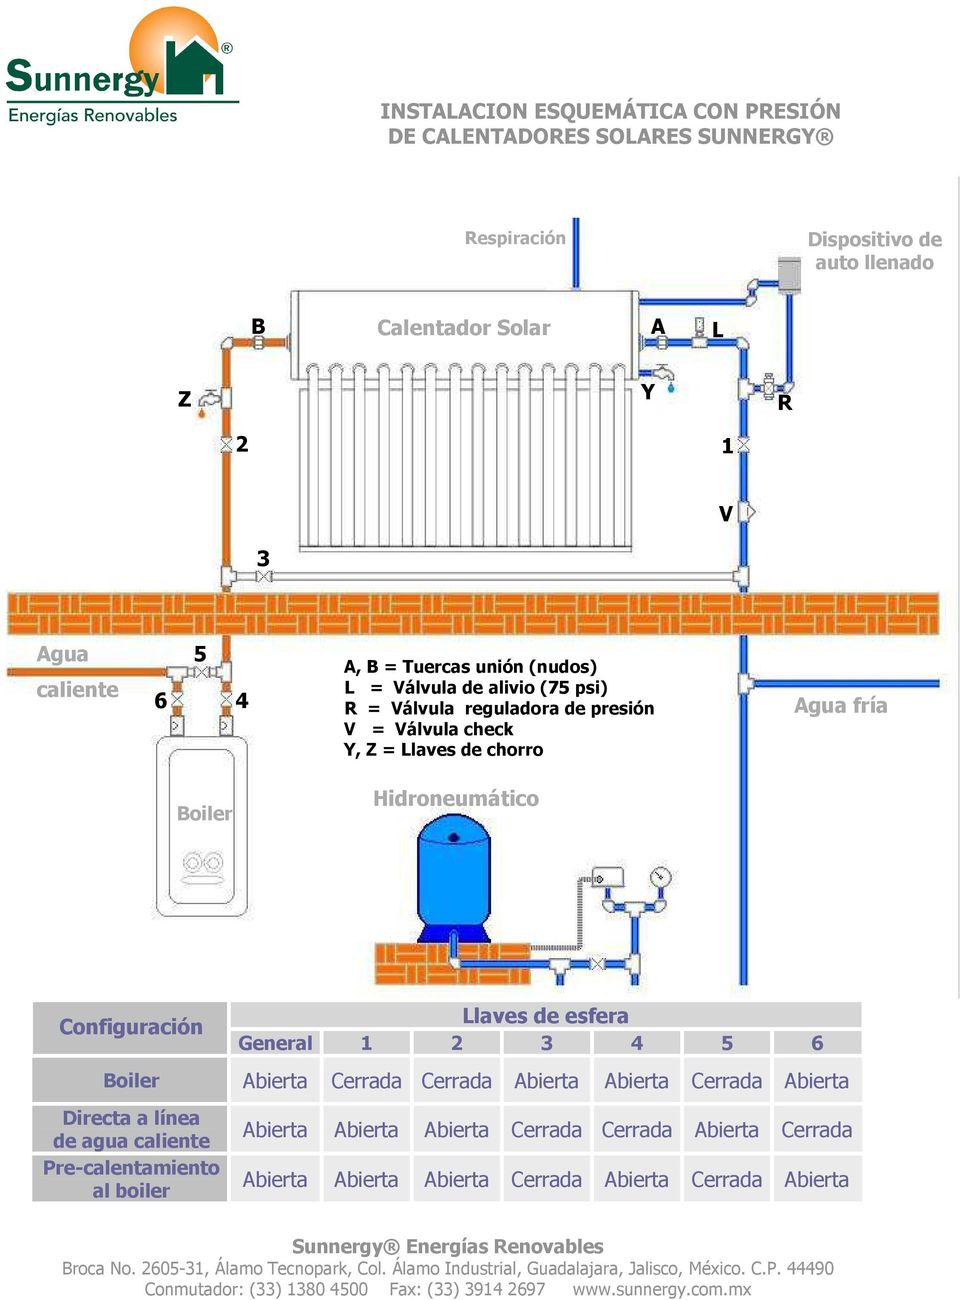 Agua fría Boiler Hidroneumático Configuración Boiler Directa a línea de agua caliente Pre-calentamiento al boiler Llaves de esfera General 1 2 3 4 5 6